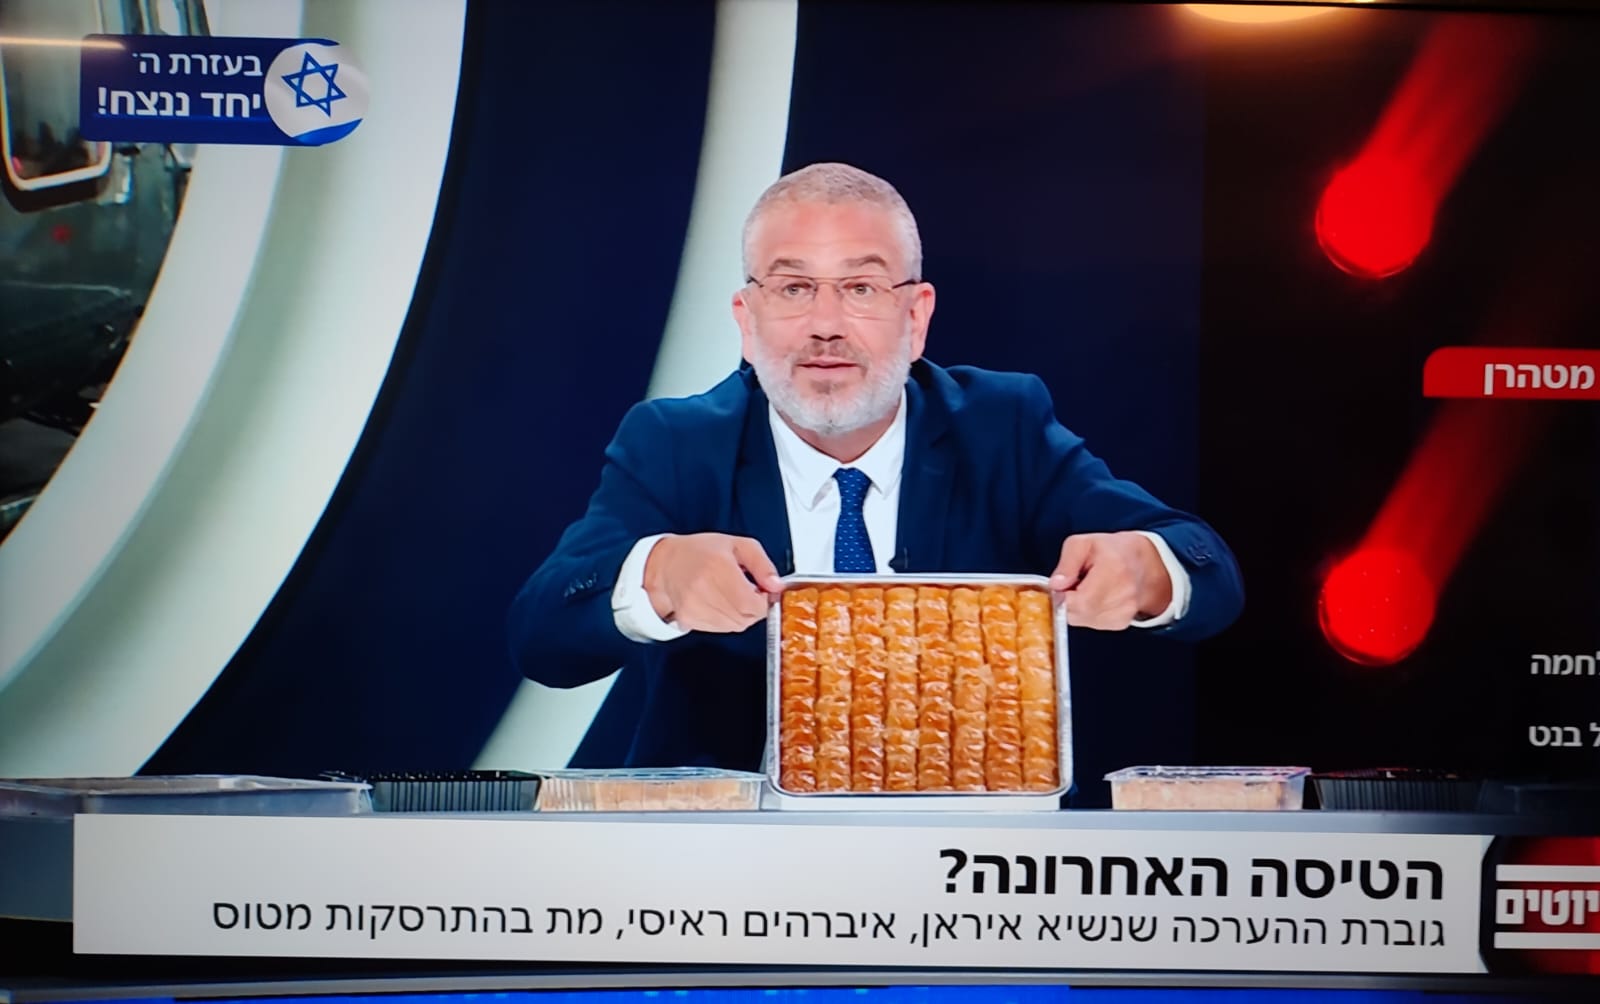 توزيع حلويات على الهواء مباشرة بقناة إسرائيلية فرحا بمصرع إبراهيم رئيسي